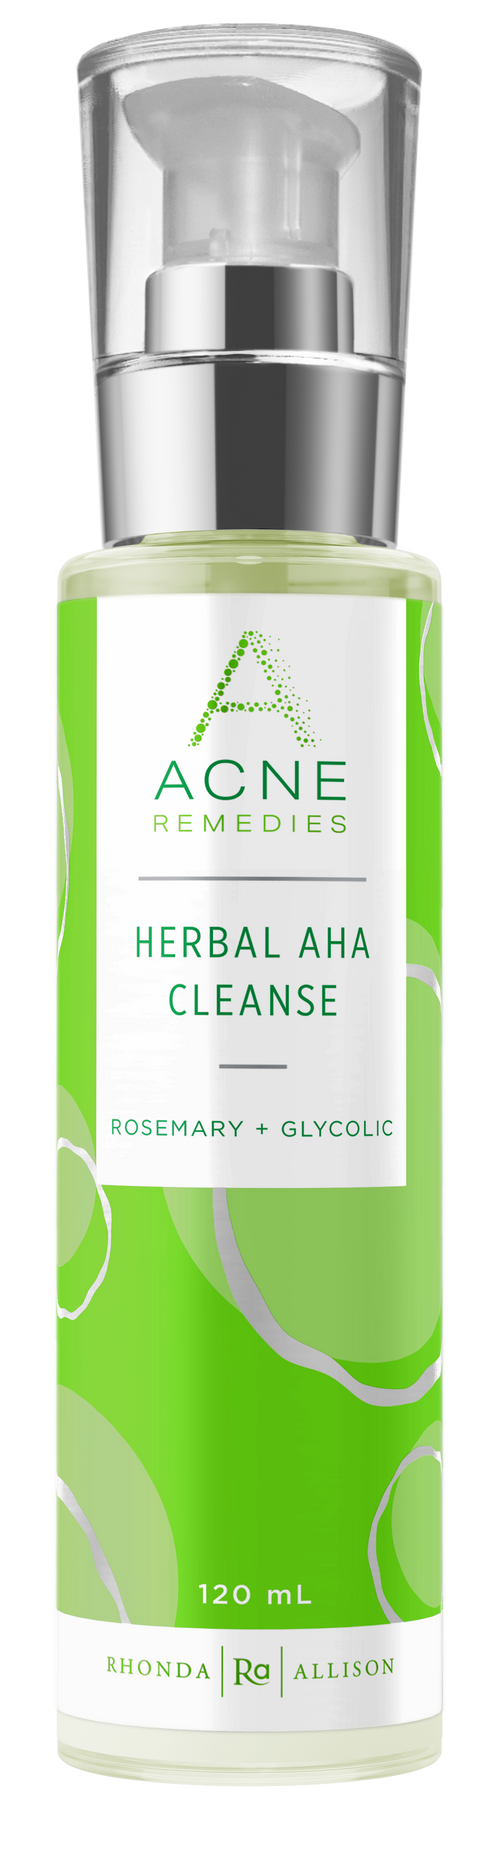 Herbal AHA Cleanse